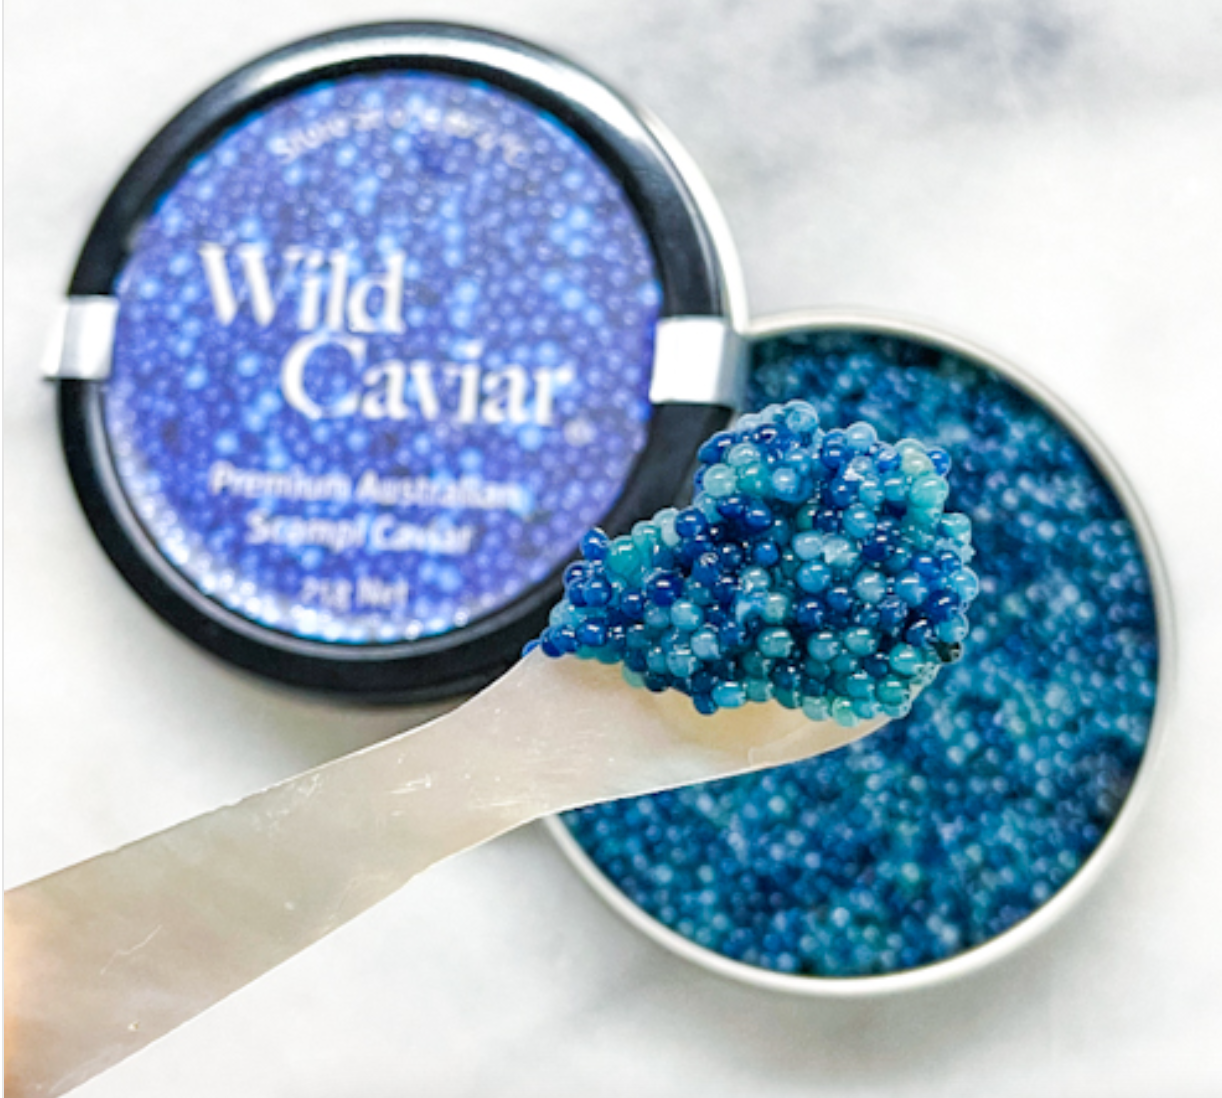 Wild Scampi Caviar